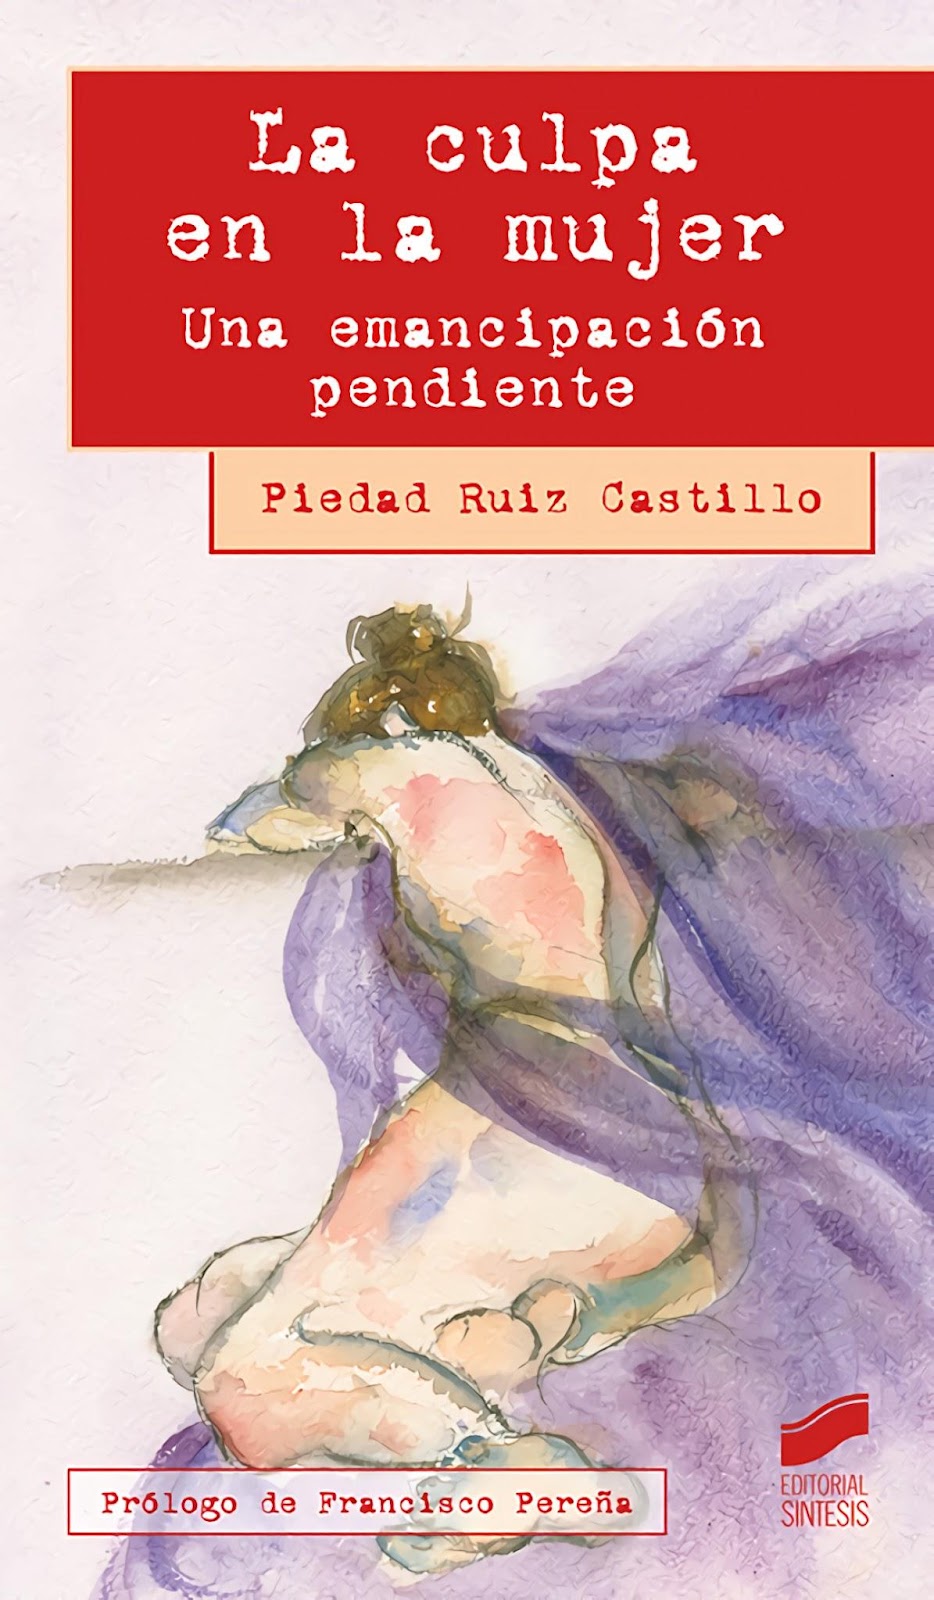 La culpa en la mujer. Una emancipación pendiente, by Piedad Ruiz Castillo BELatina Latinx